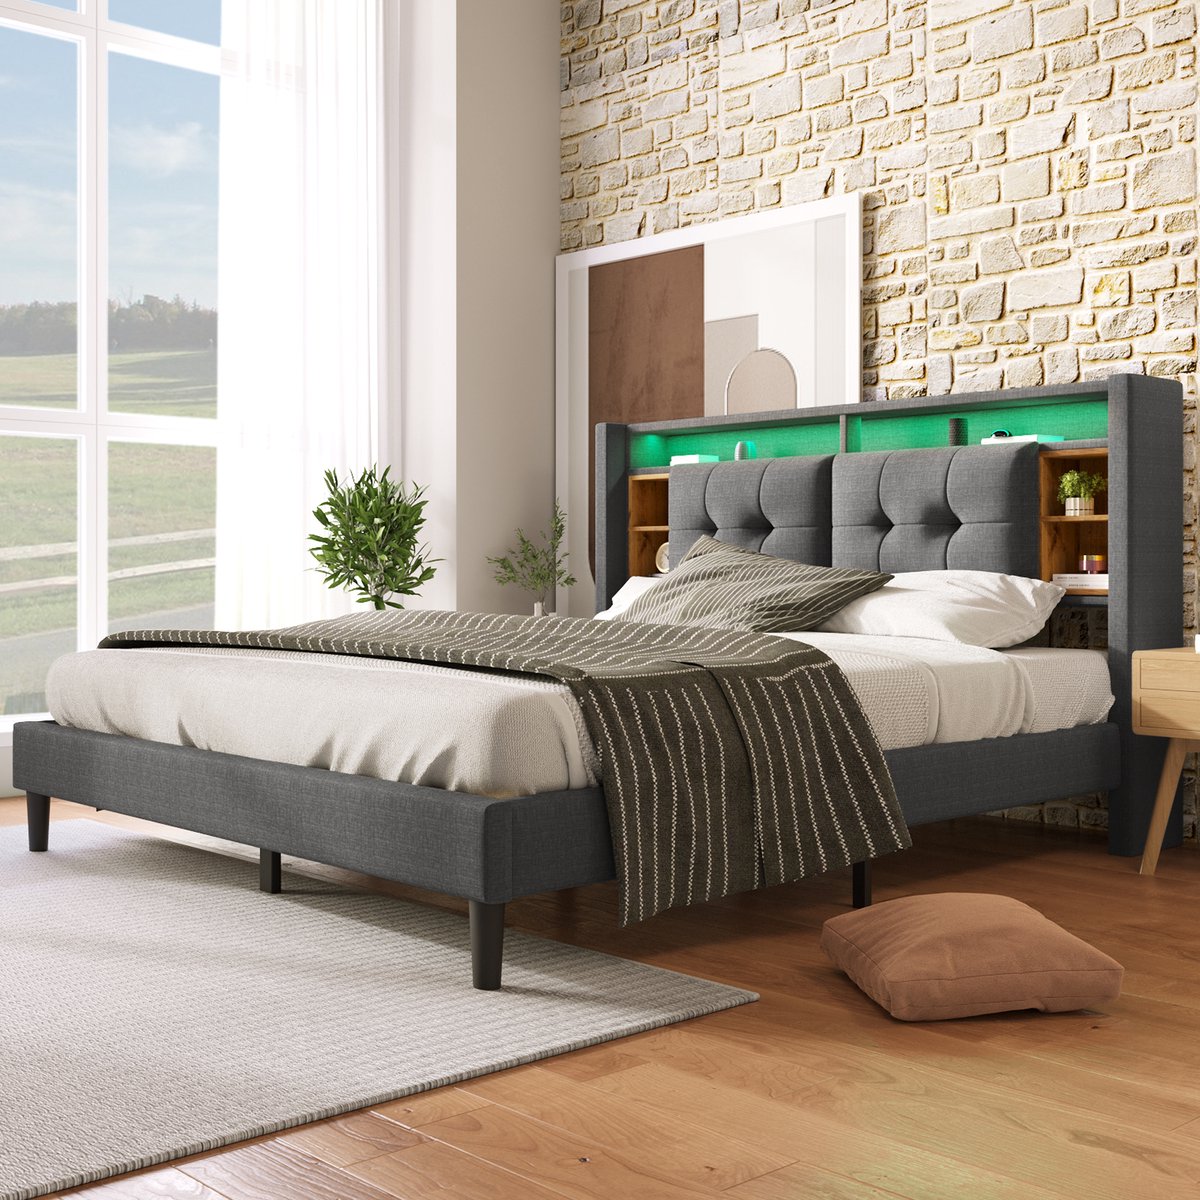 Gestoffeerd tweepersoonsbed met opbergruimte - hoofdeinde bed met oplaad USB en LED verlichting - houten bed lattenbodem - 140x200CM grijs (zonder matras)